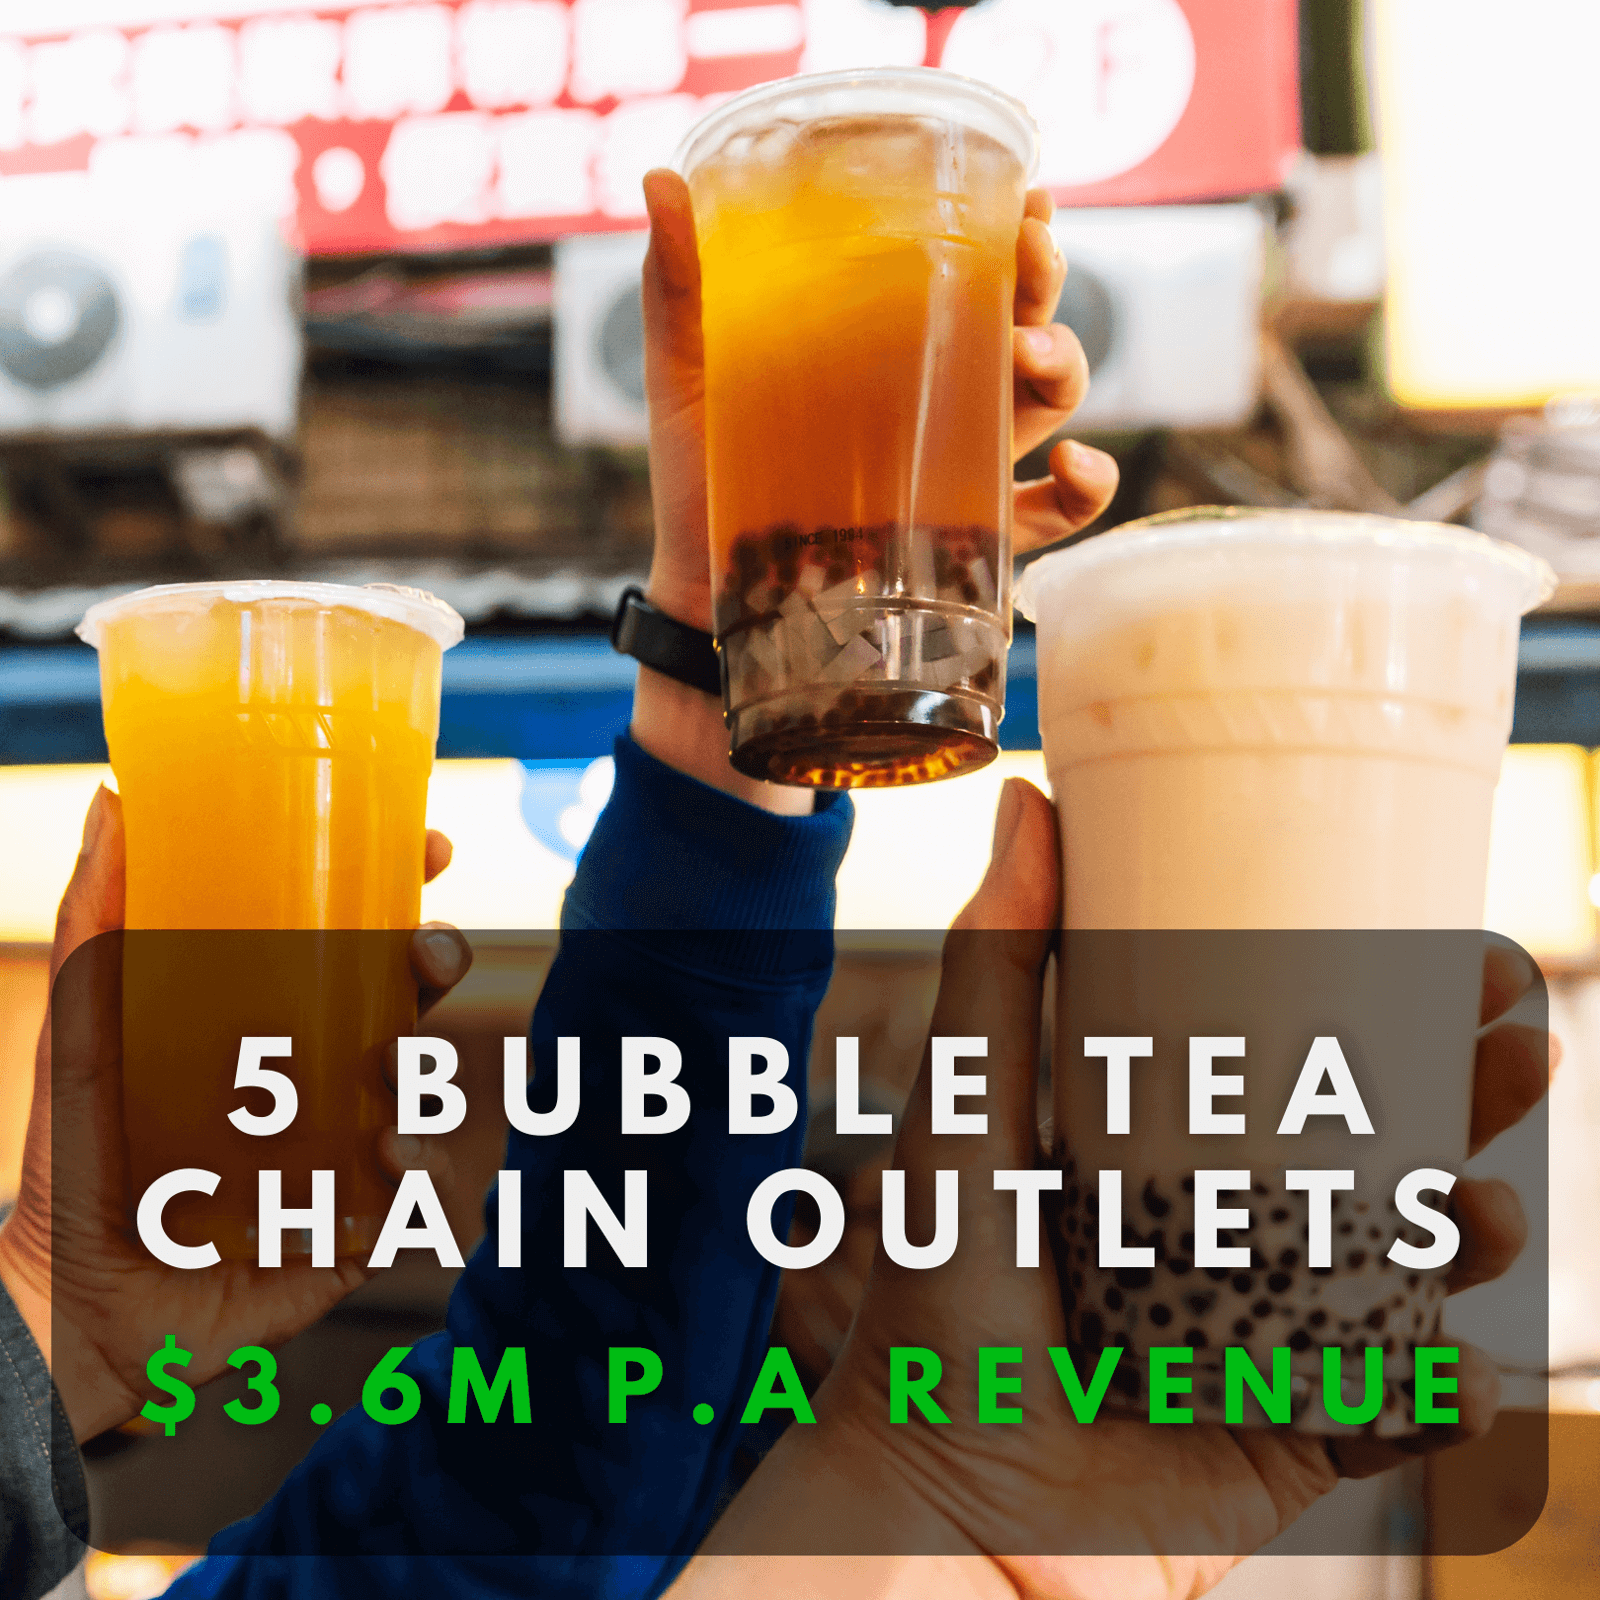 (已成交)5 Bubble Tea Stores Locally | $3.6M Yearly Revenue | Owner Retiring For Good